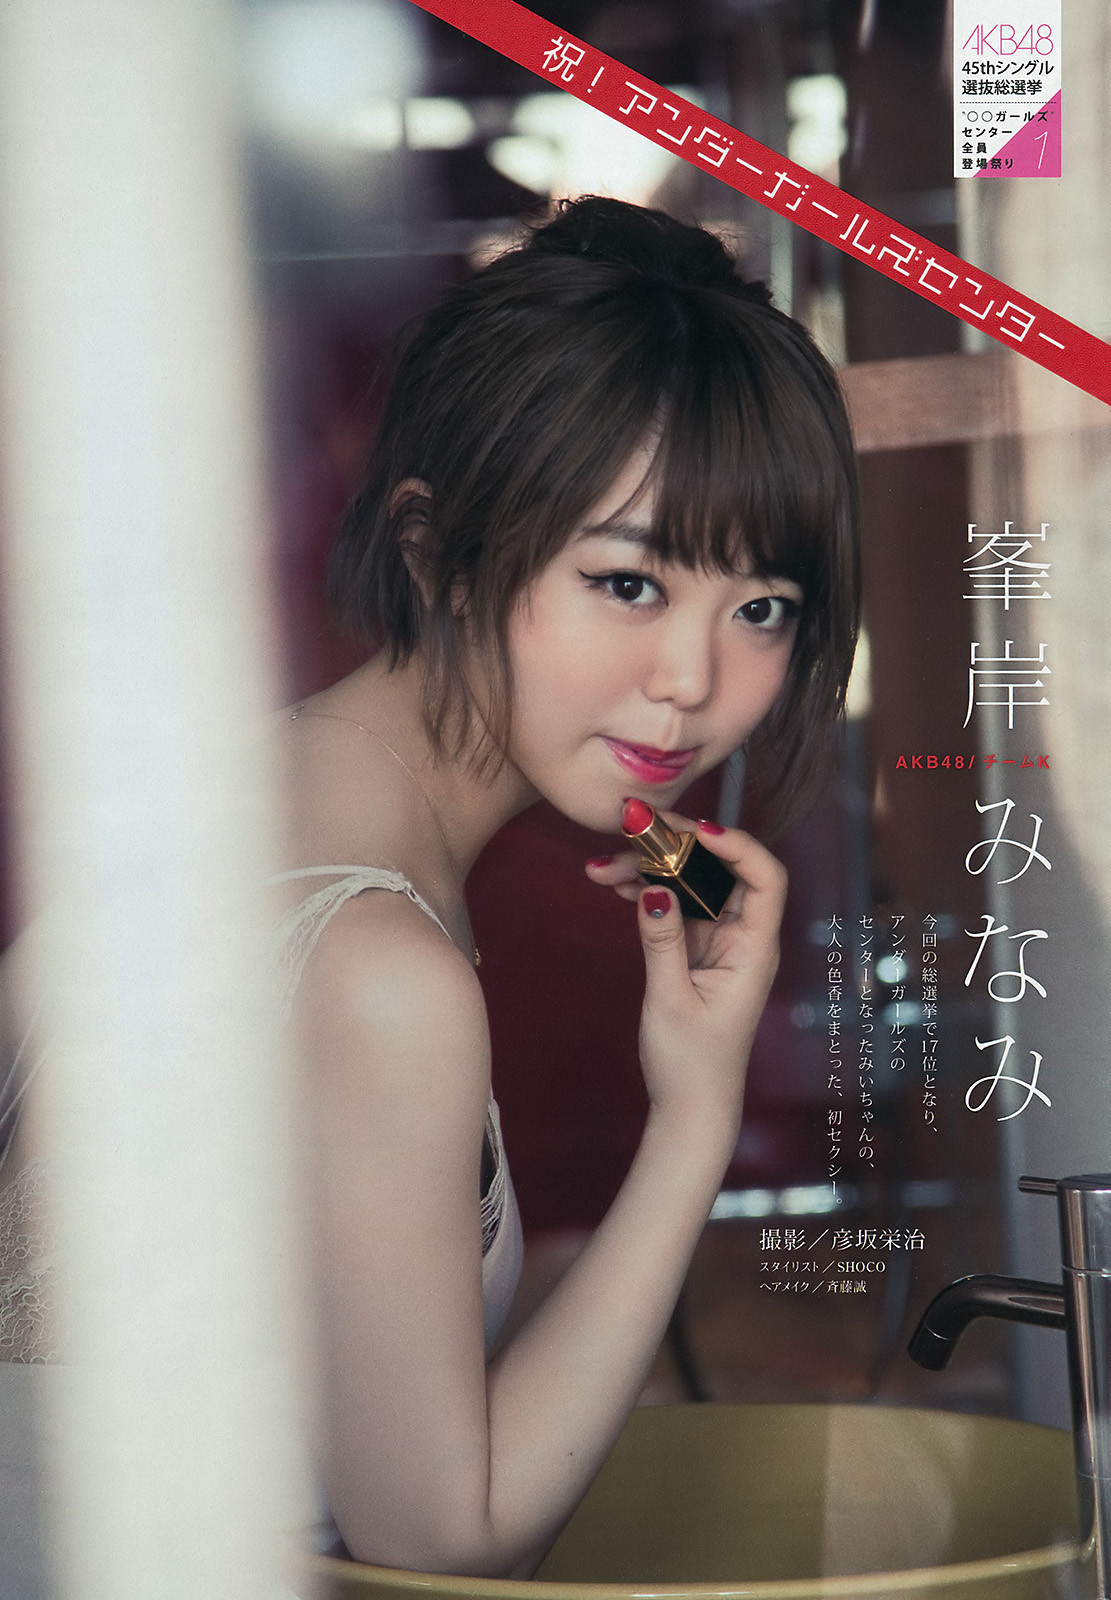 Minegishi Minami AKB48 on Young Magazine HD